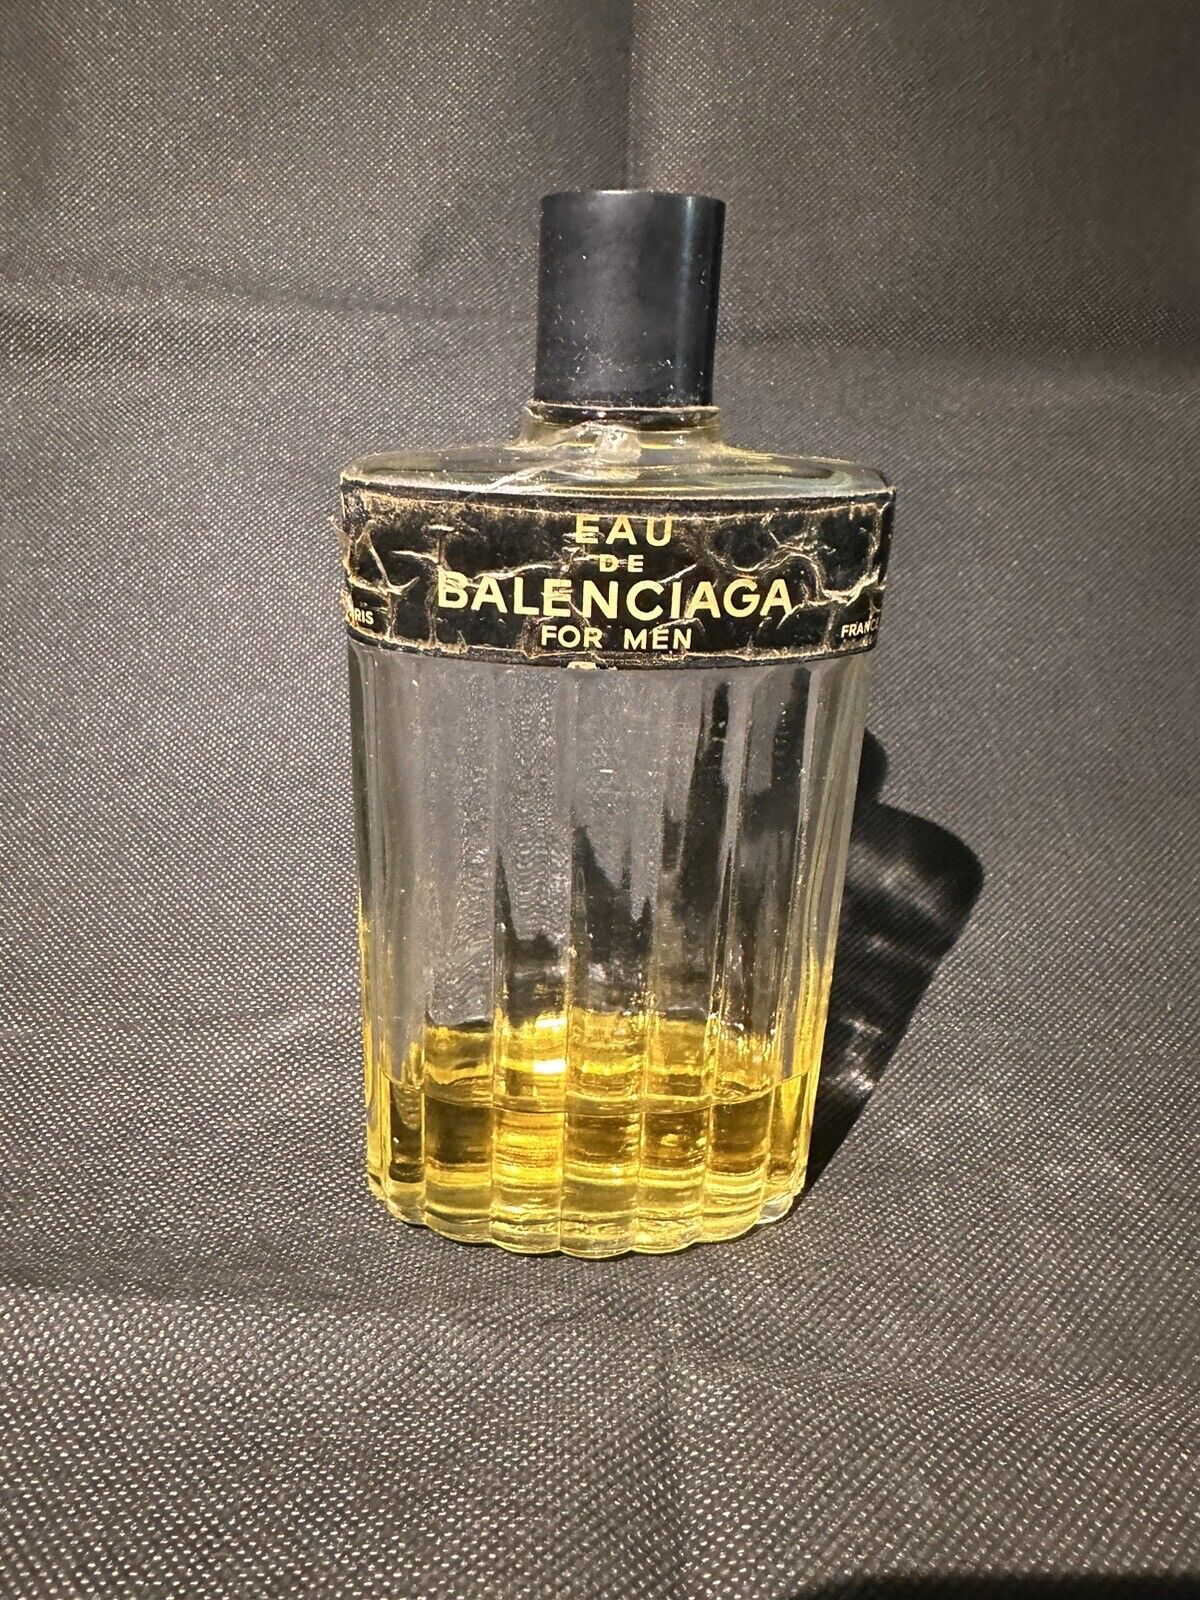 VINTAGE 1960s Eau de Balenciaga for Men Cologne 4 fl.oz/ 120 ml Size Bottle